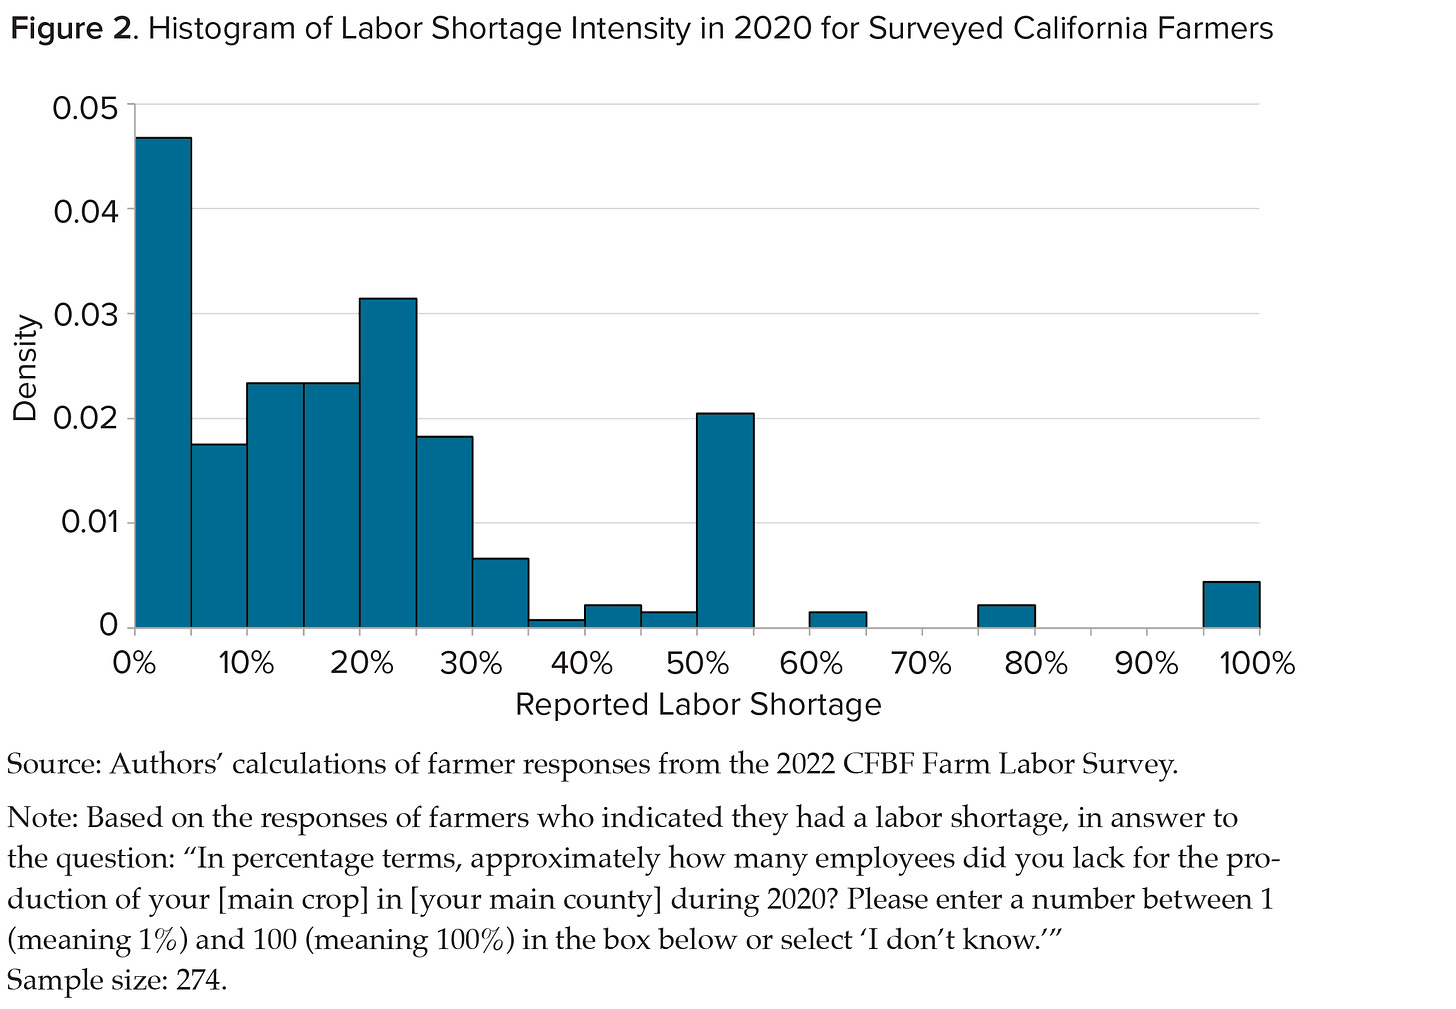 Labor Shortage